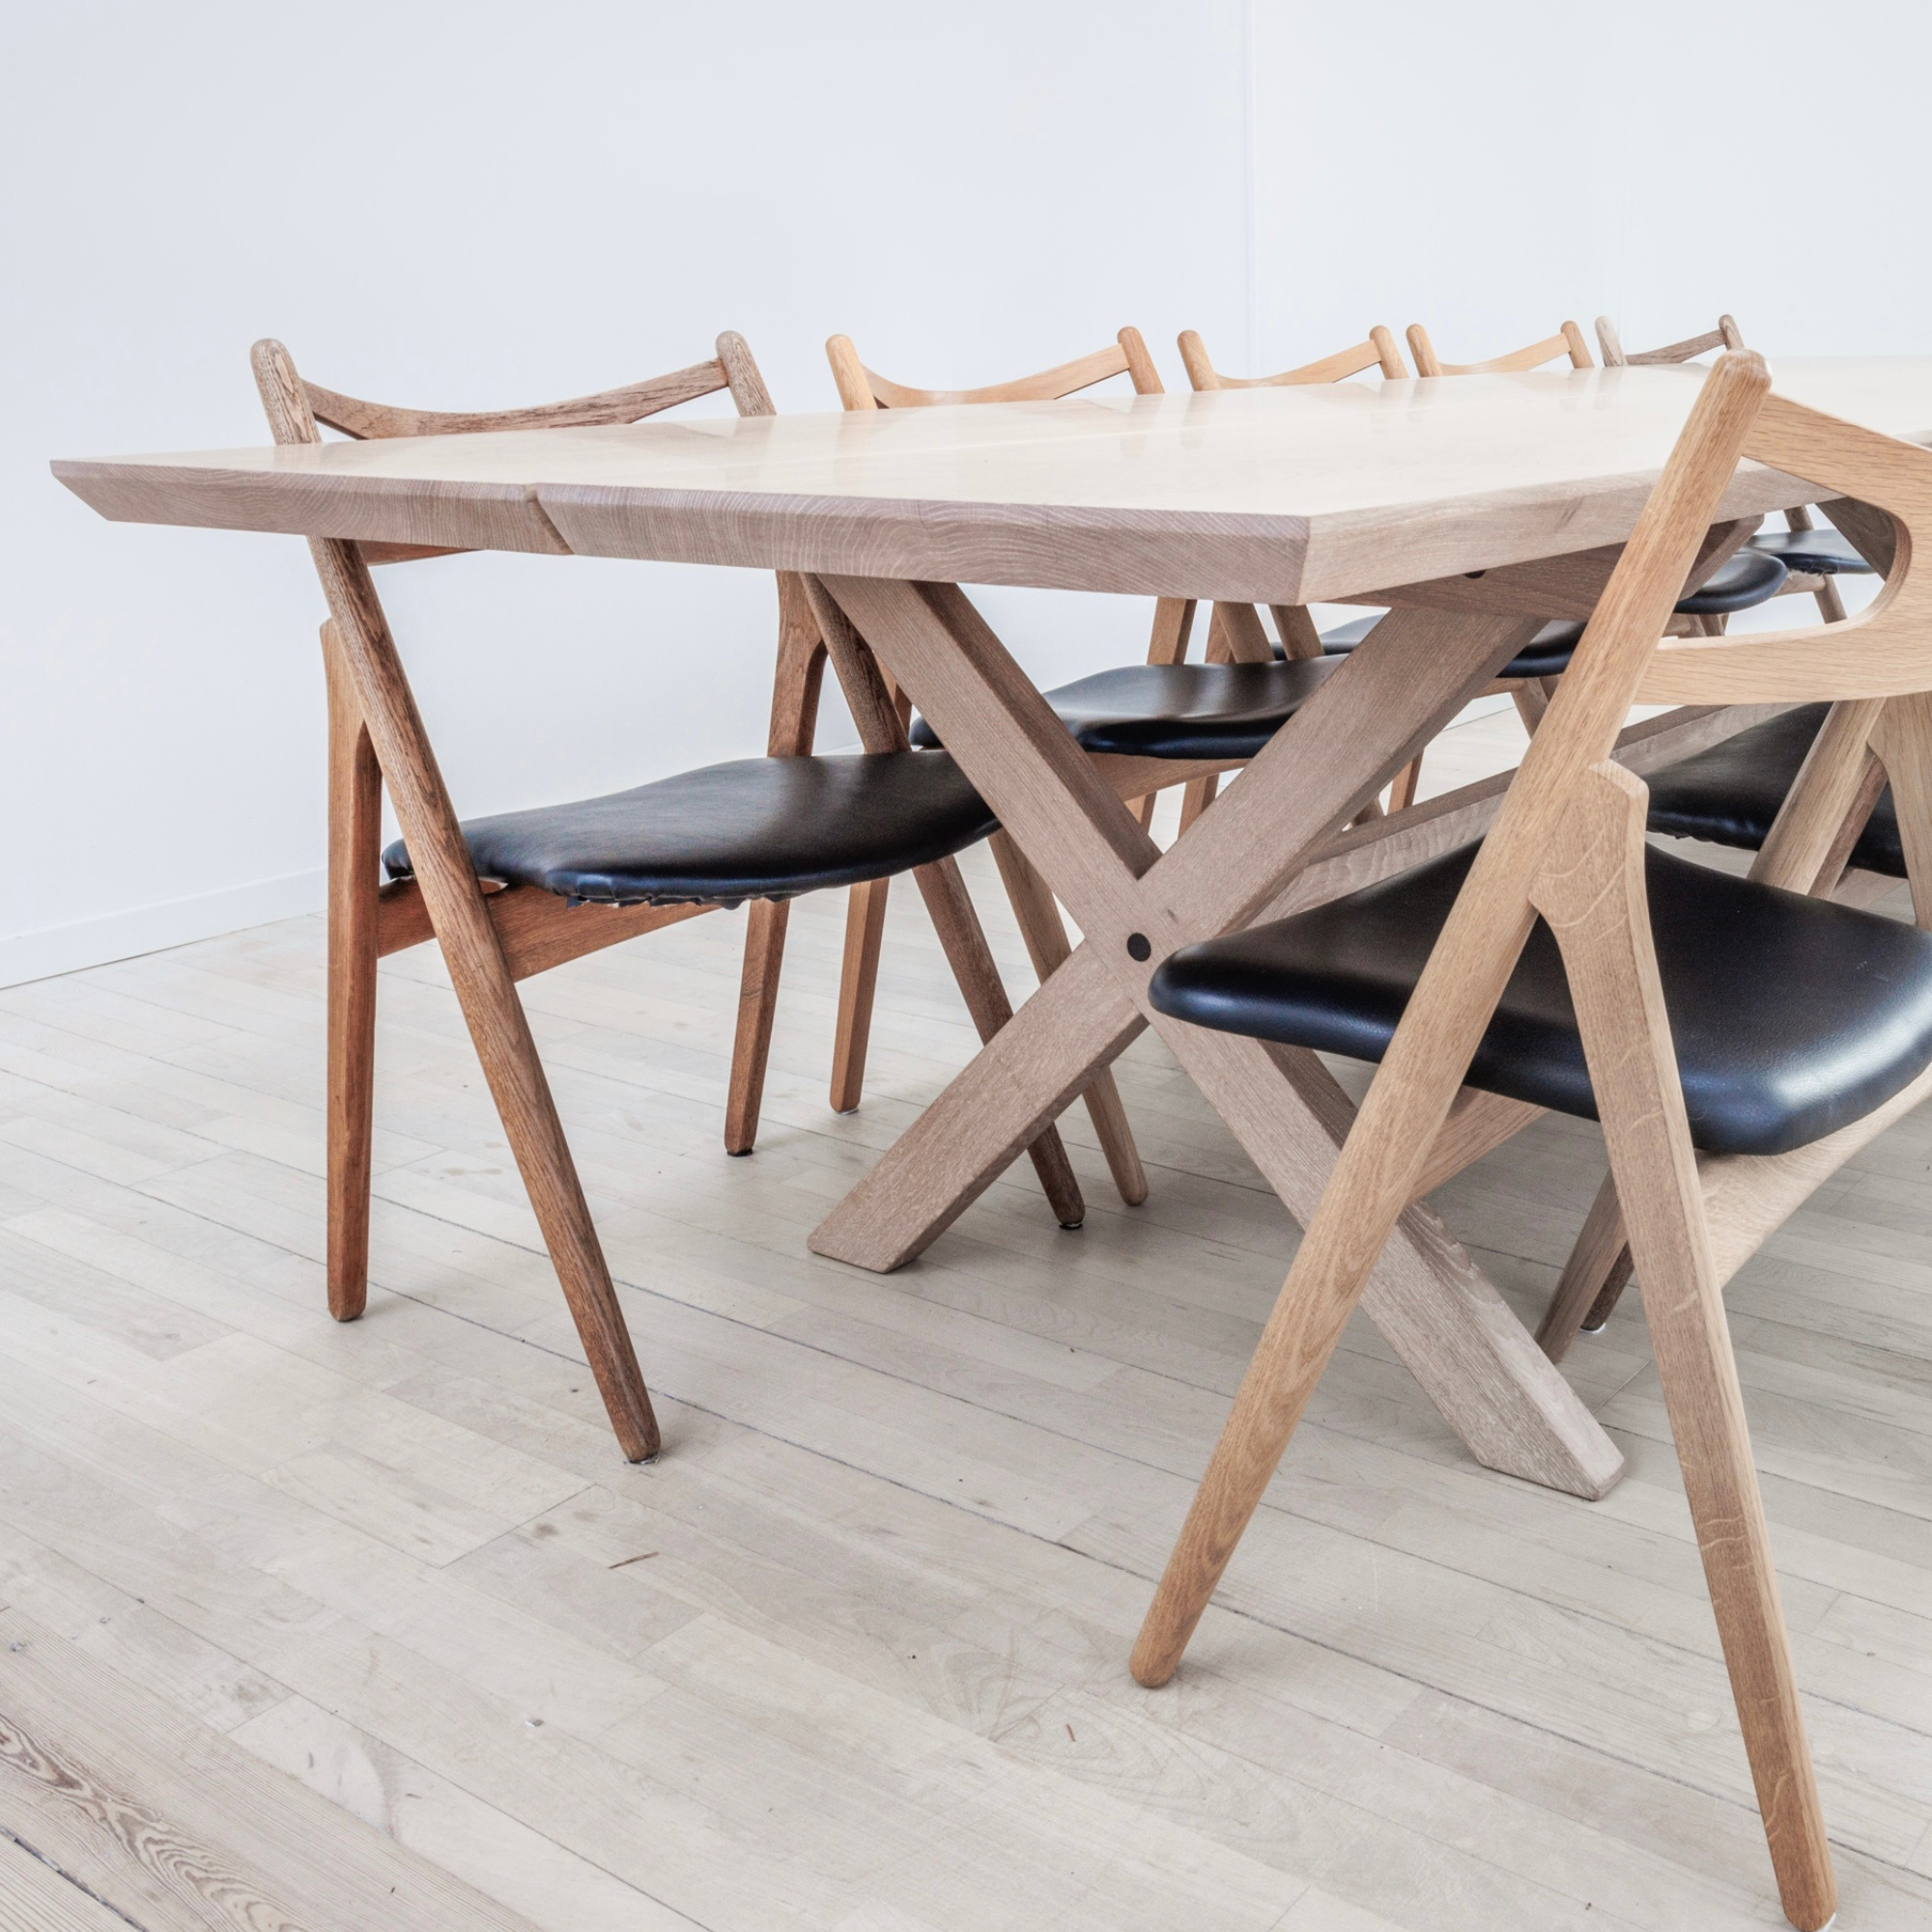 Gillelejebordet - Egetræs plankebord - Snedker Spisebord - Hvid olie - Gradskåret kant